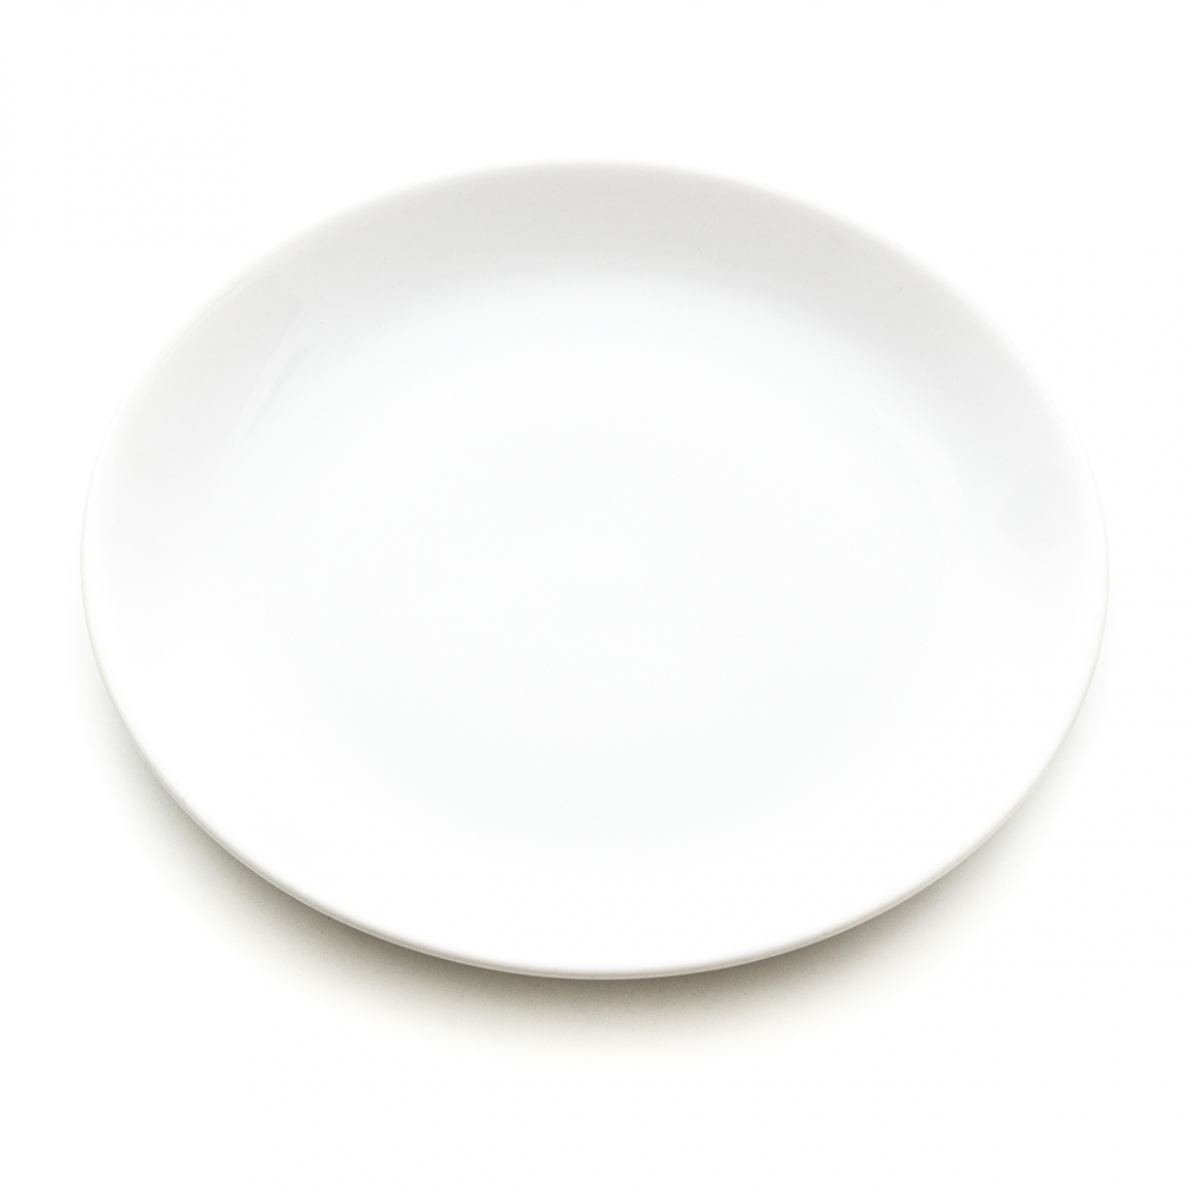 Imagen en la que se ve un plato blanco llano